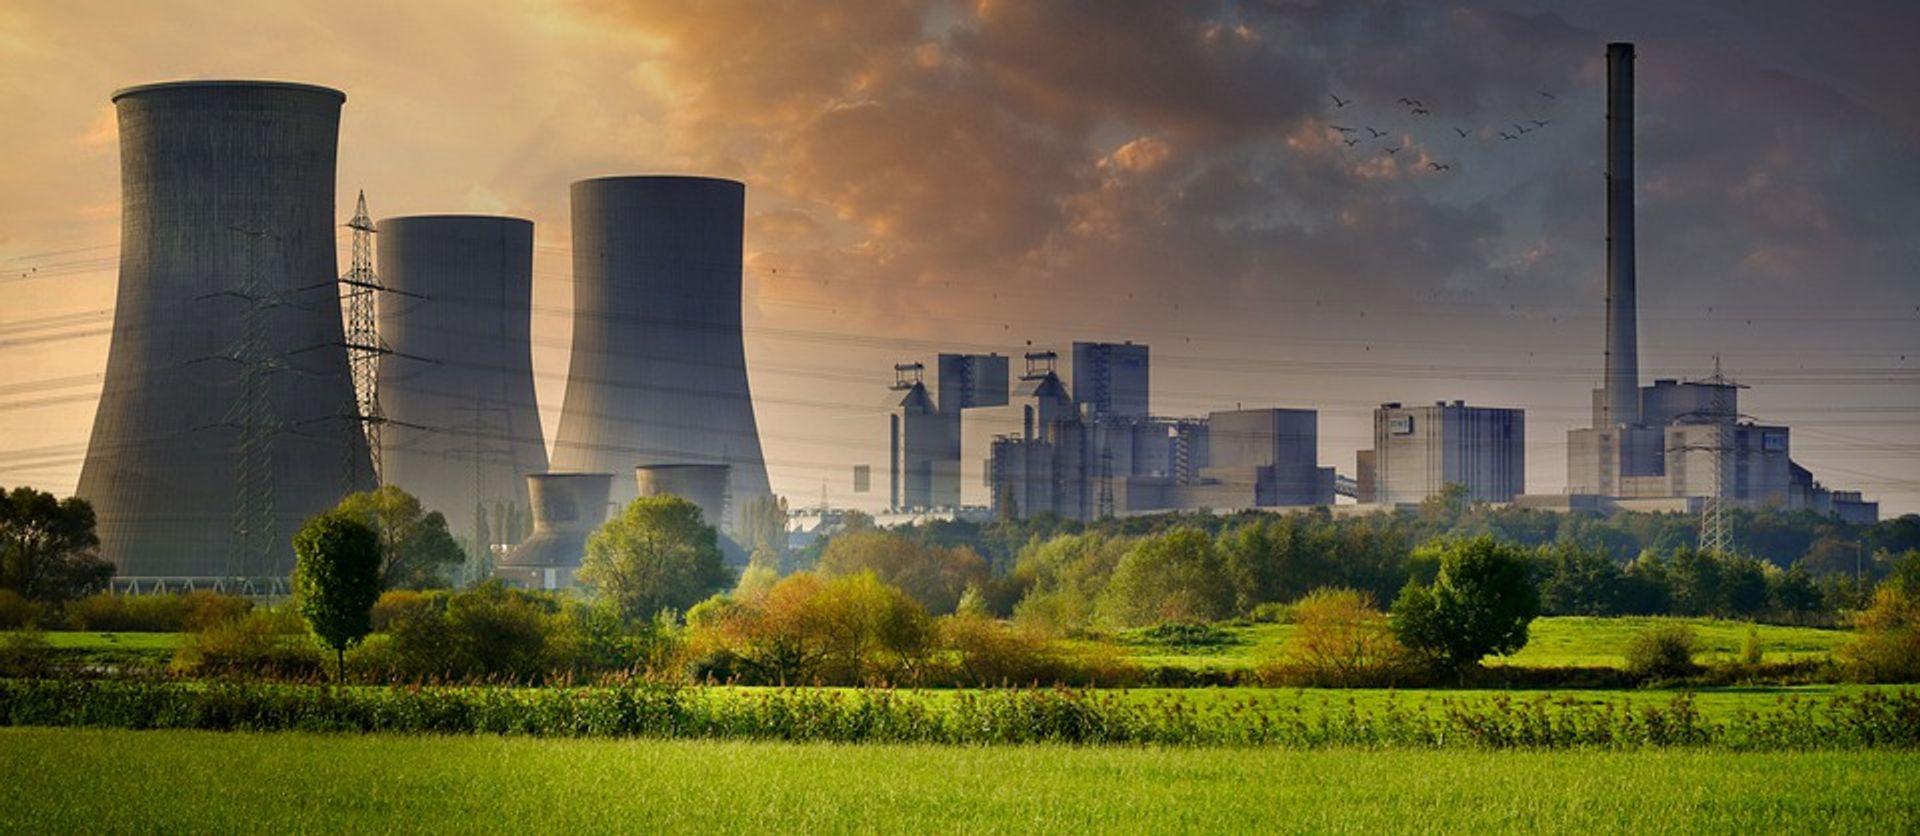 Westinghouse Electric Company podpisał umowy o współpracy przy projekcie jądrowym z 22 polskimi firmami